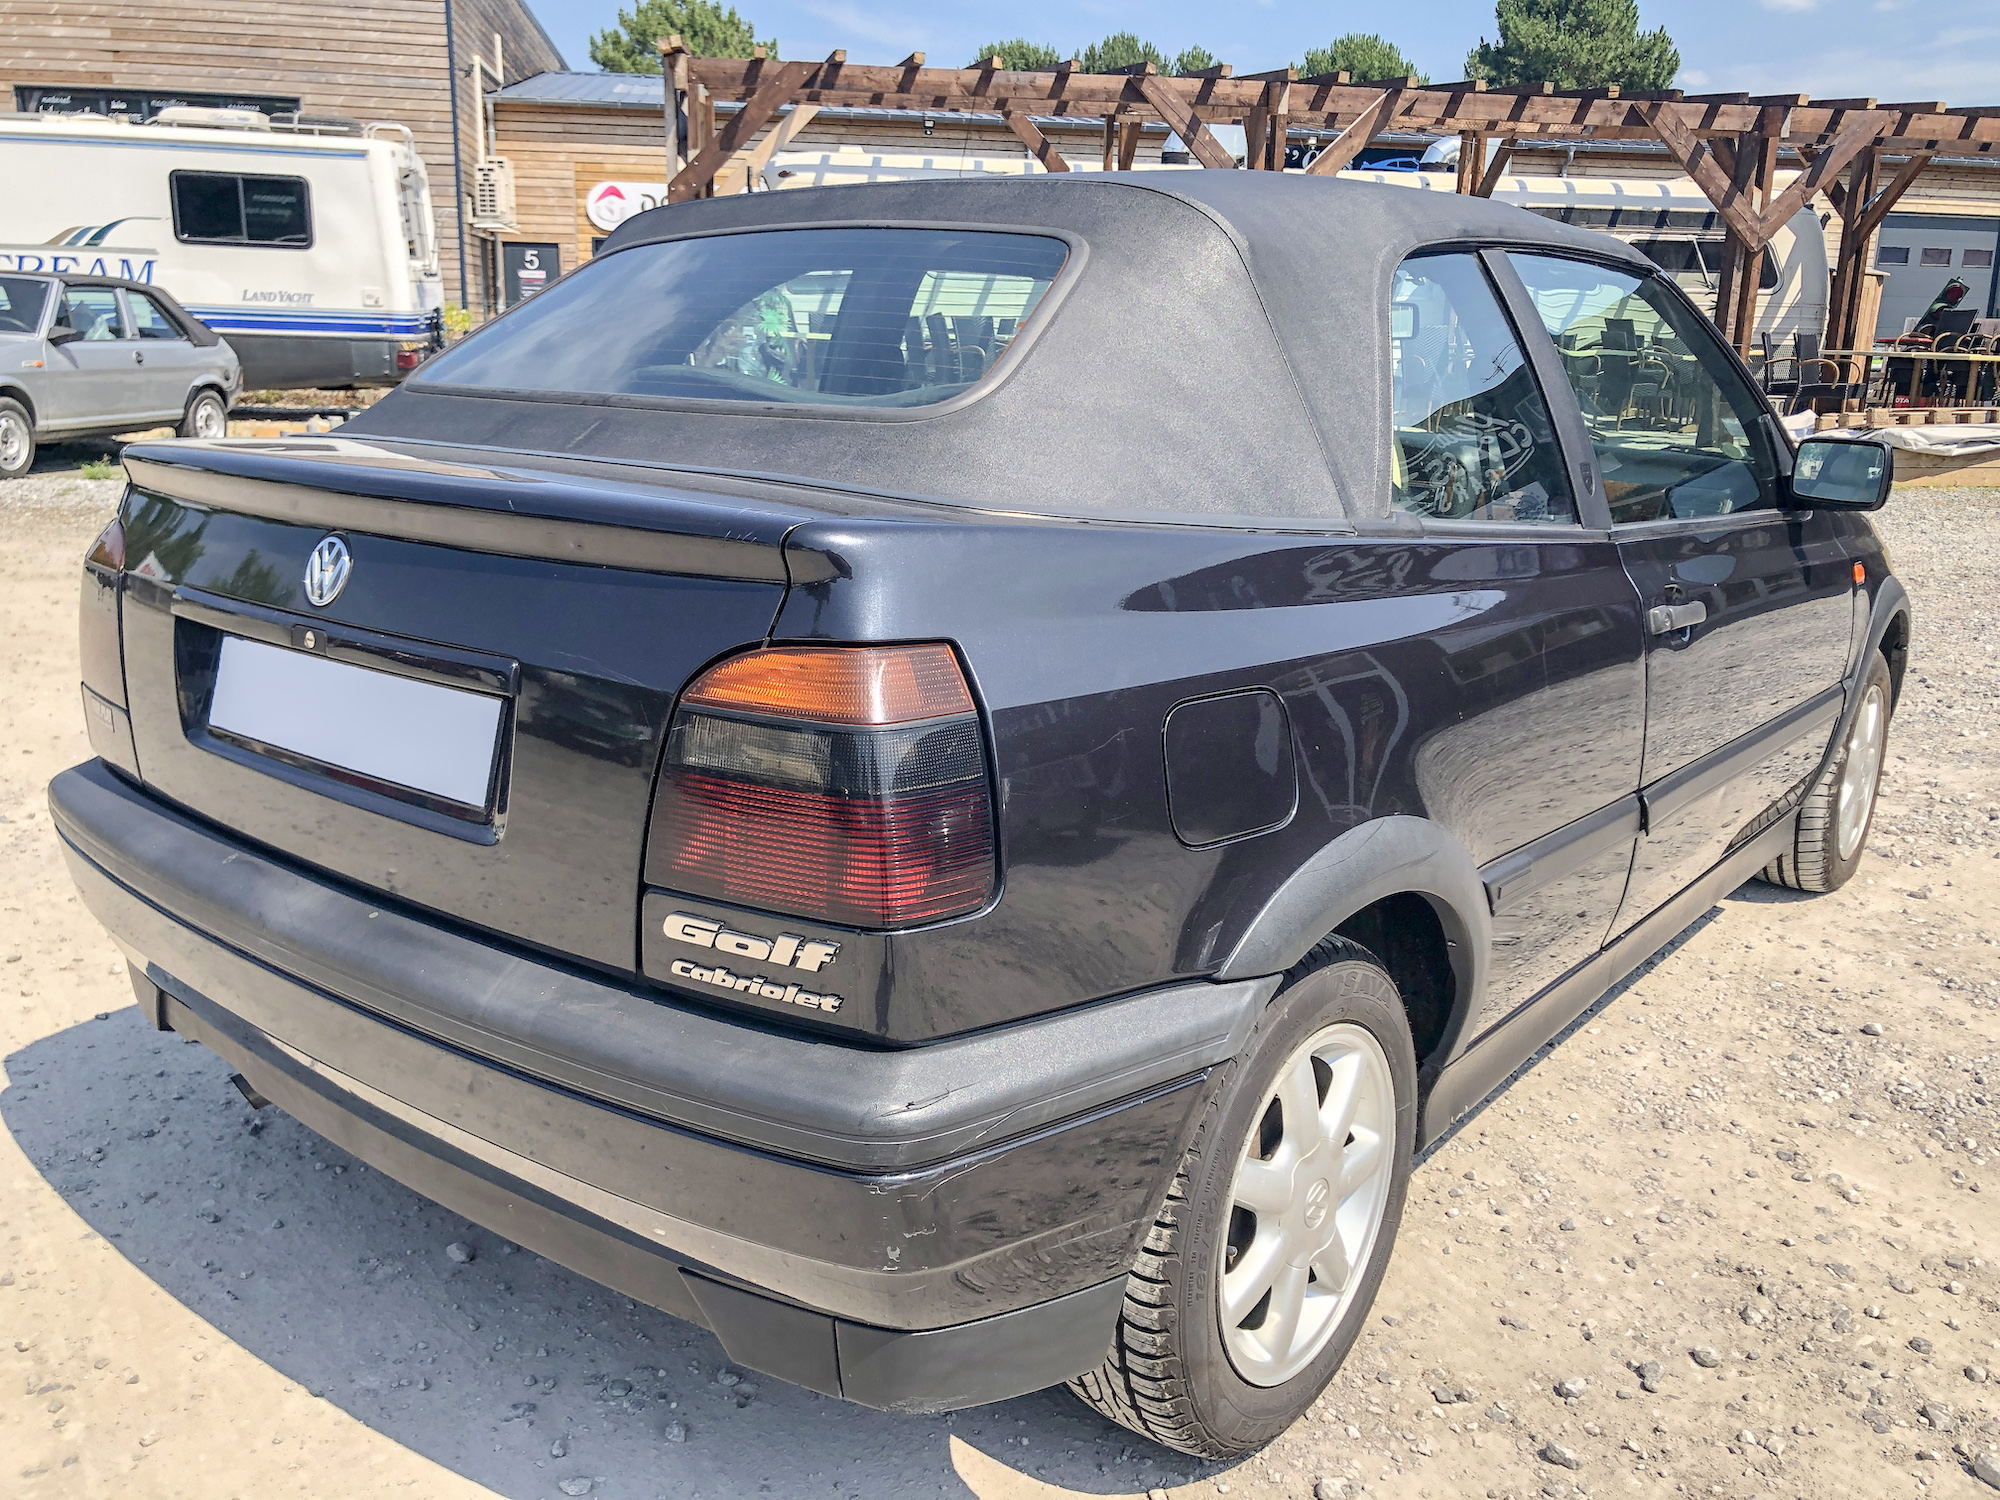 A vendre Volkswagen Golf 3 cabriolet 1996 - intérieur cuir et boite auto